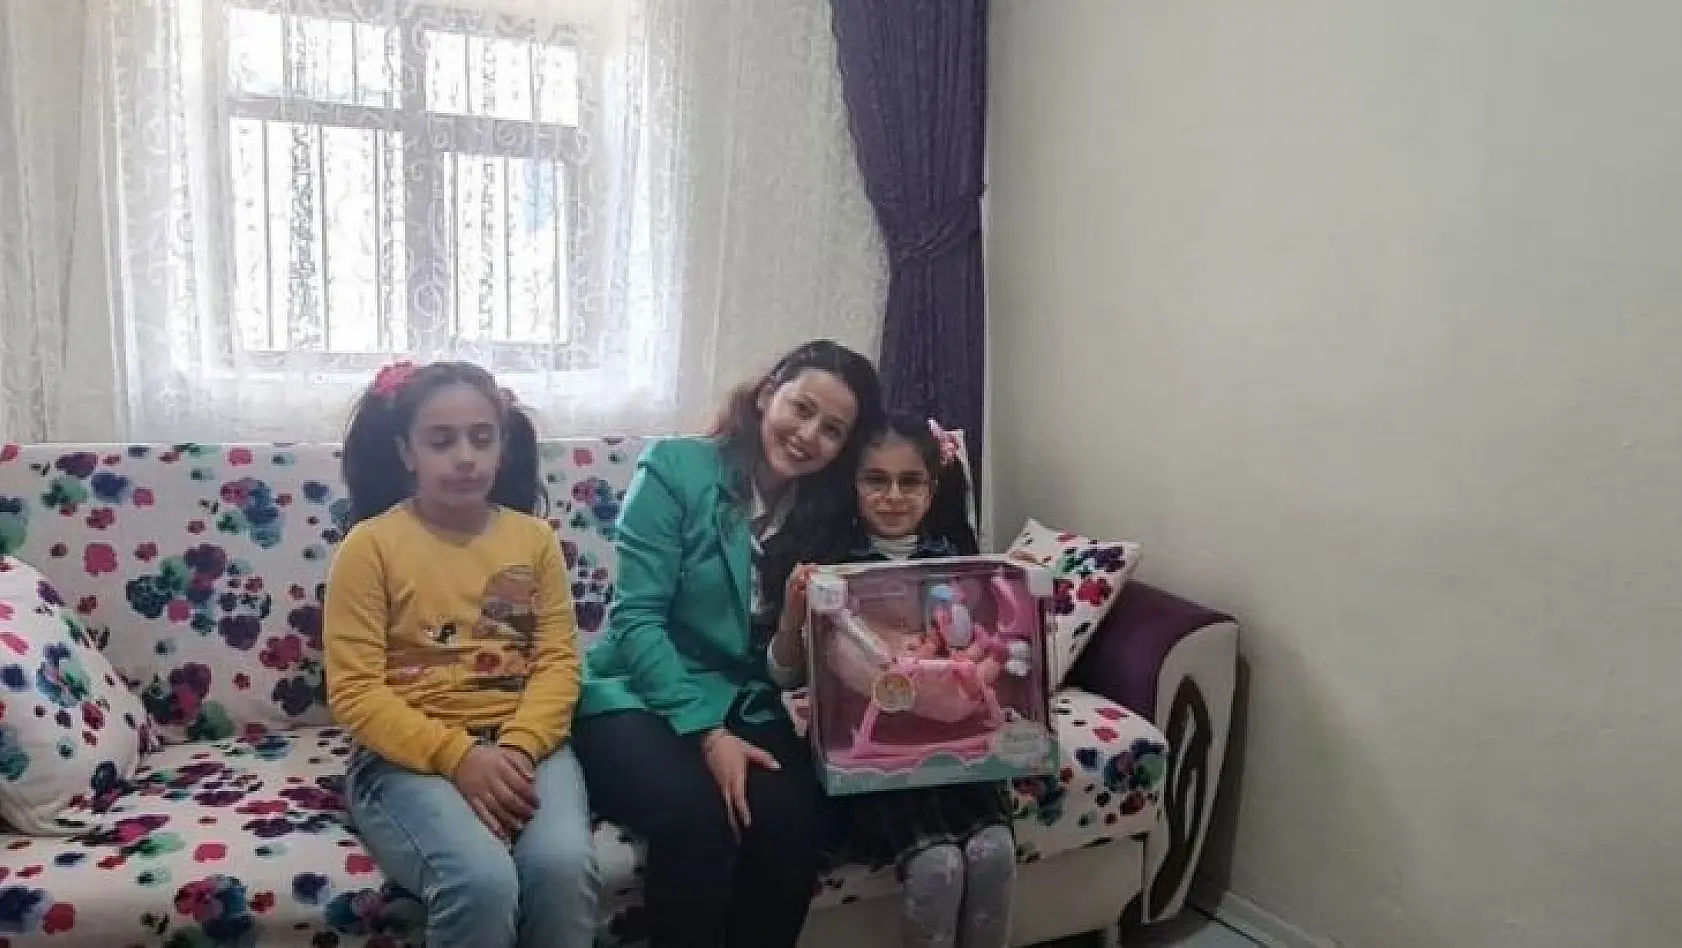 Tunceli'de 'Çocukların Düşü Hozat'ın Gülüşü' Projesi